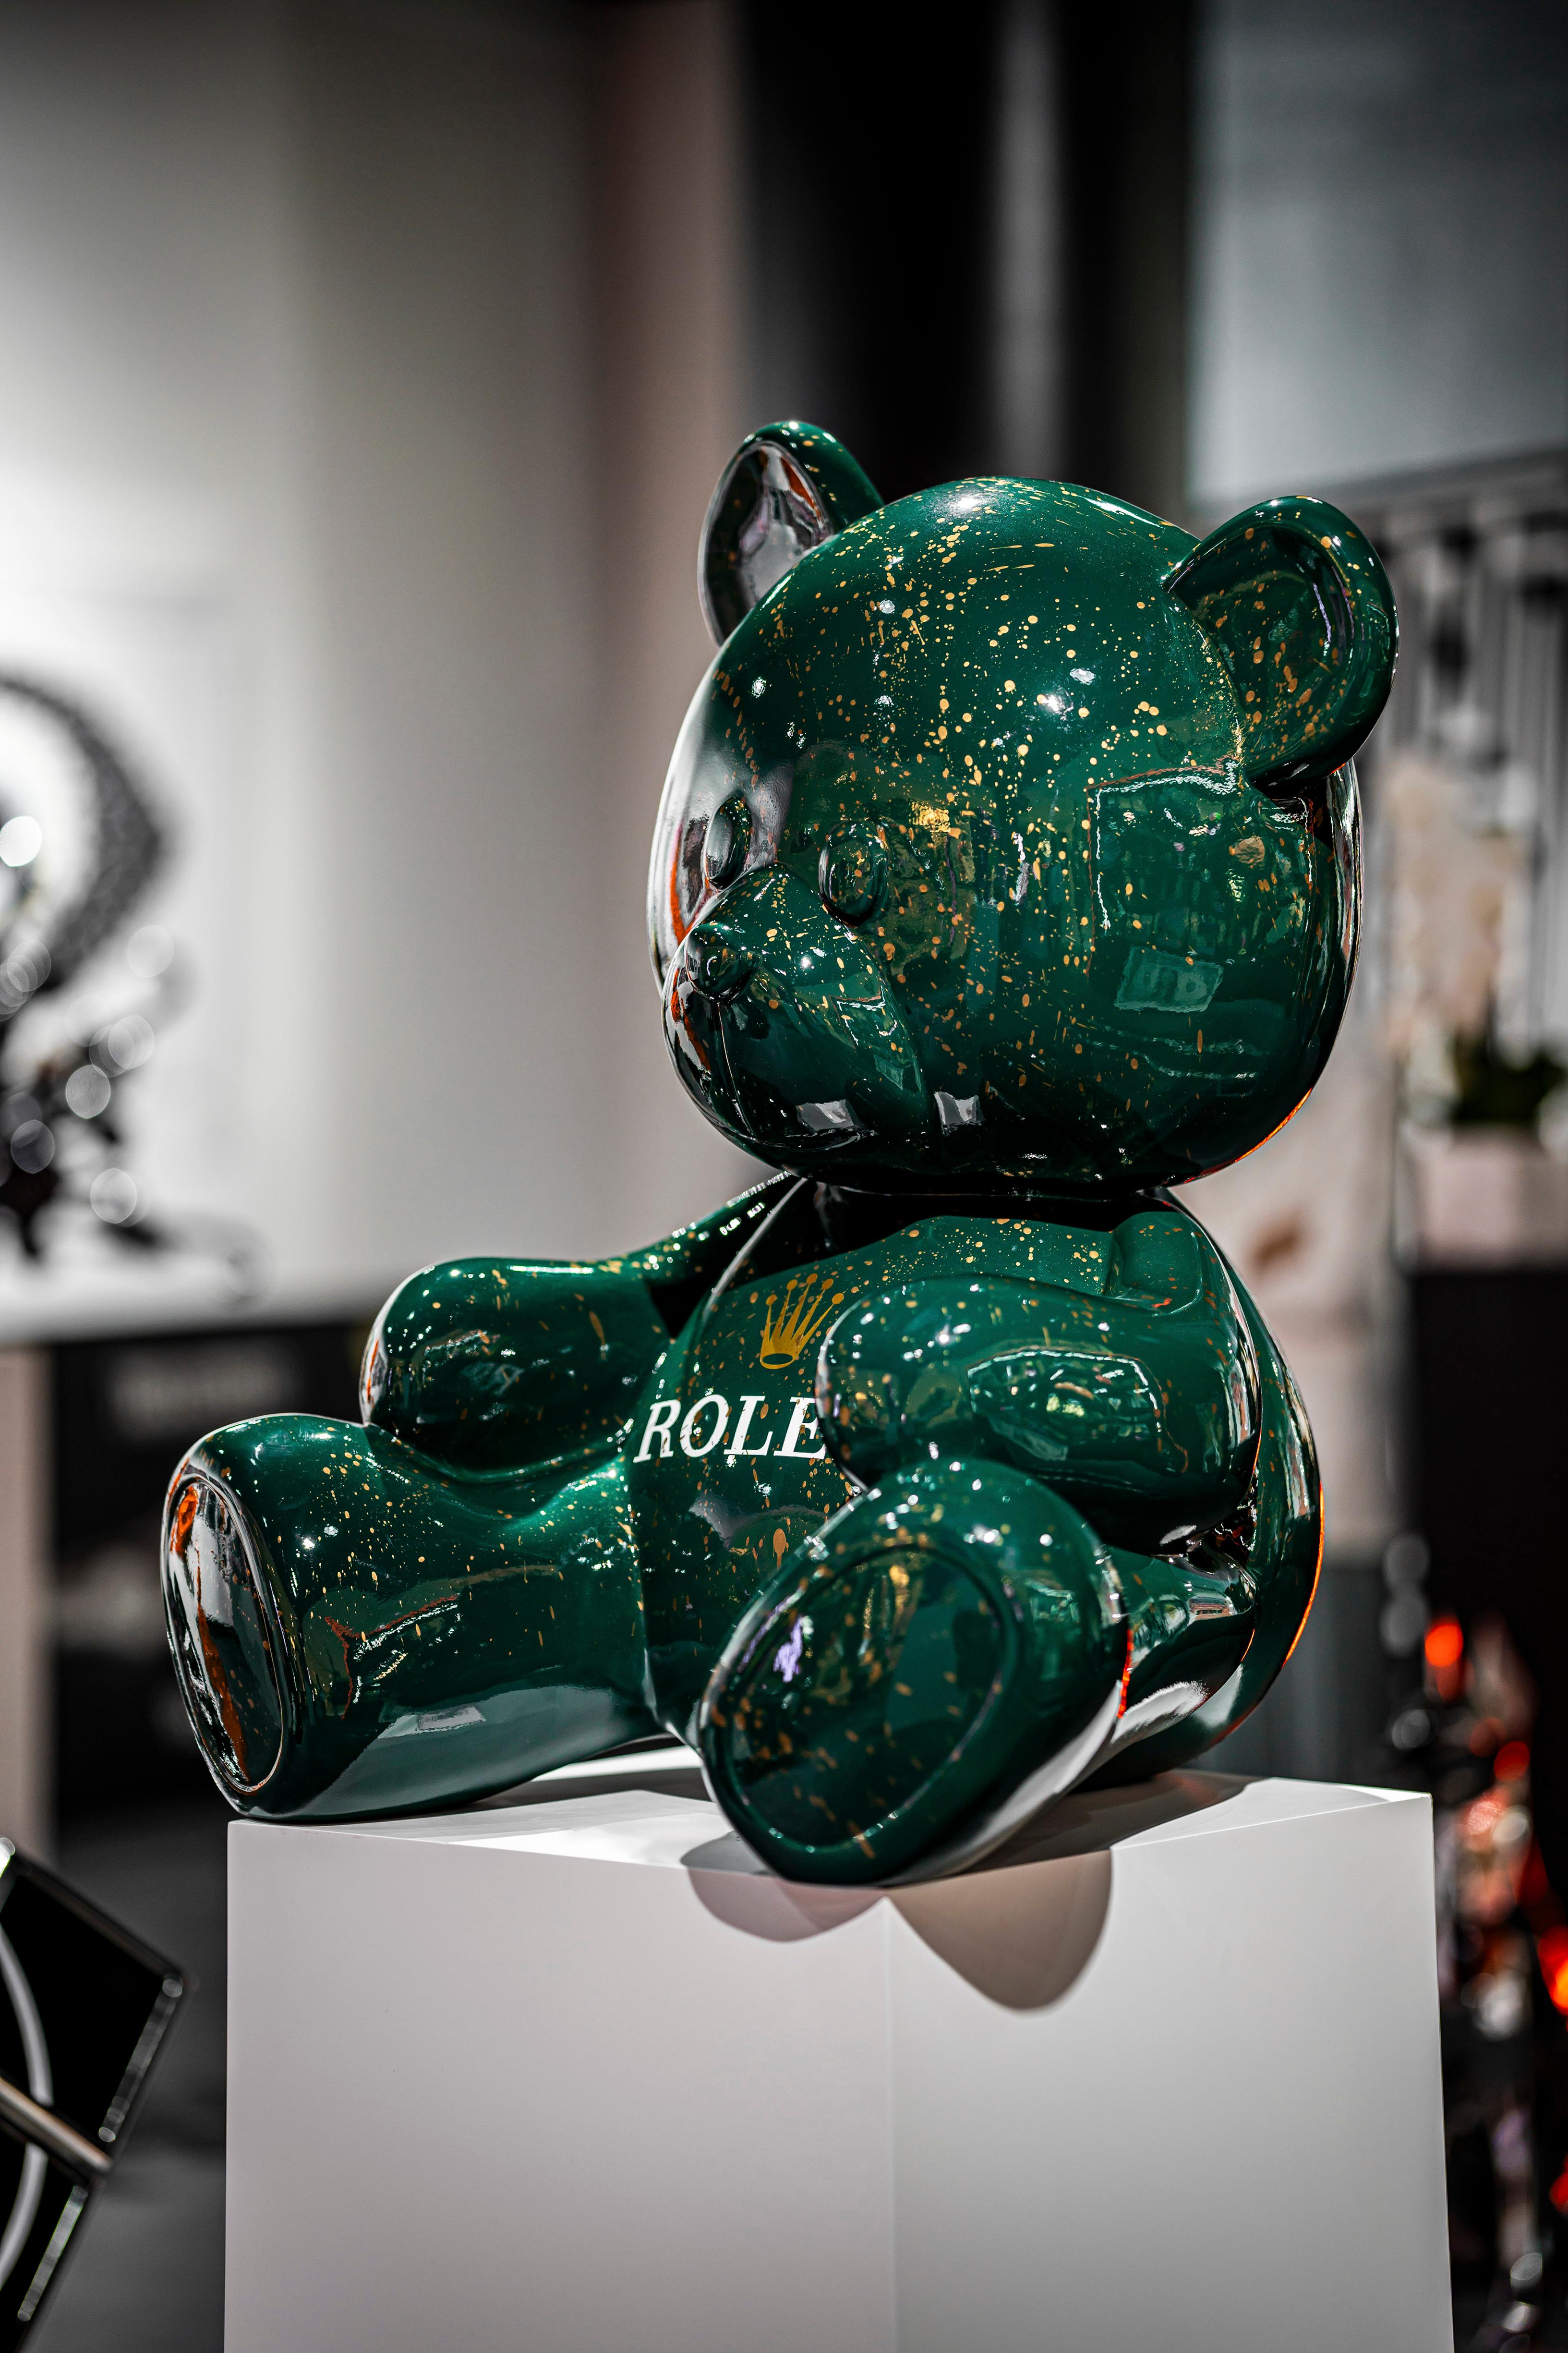 90cm Teddy Rolex Tribut (Pop-Art), Sculpture, von Naor